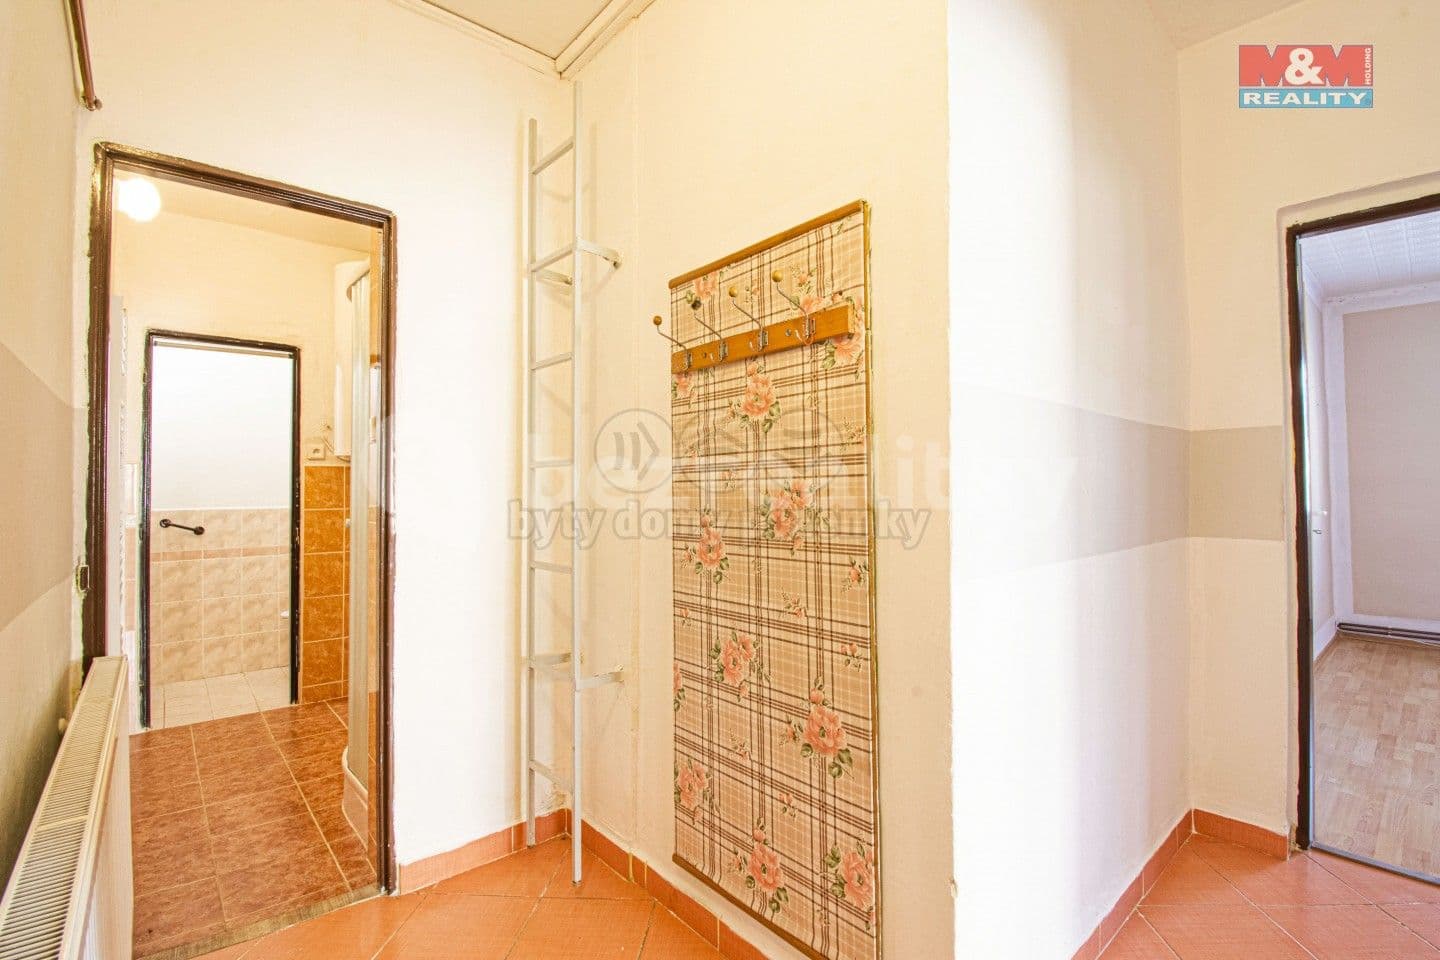 Predaj bytu 3-izbový 70 m², K Lesu, Krnov, Moravskoslezský kraj